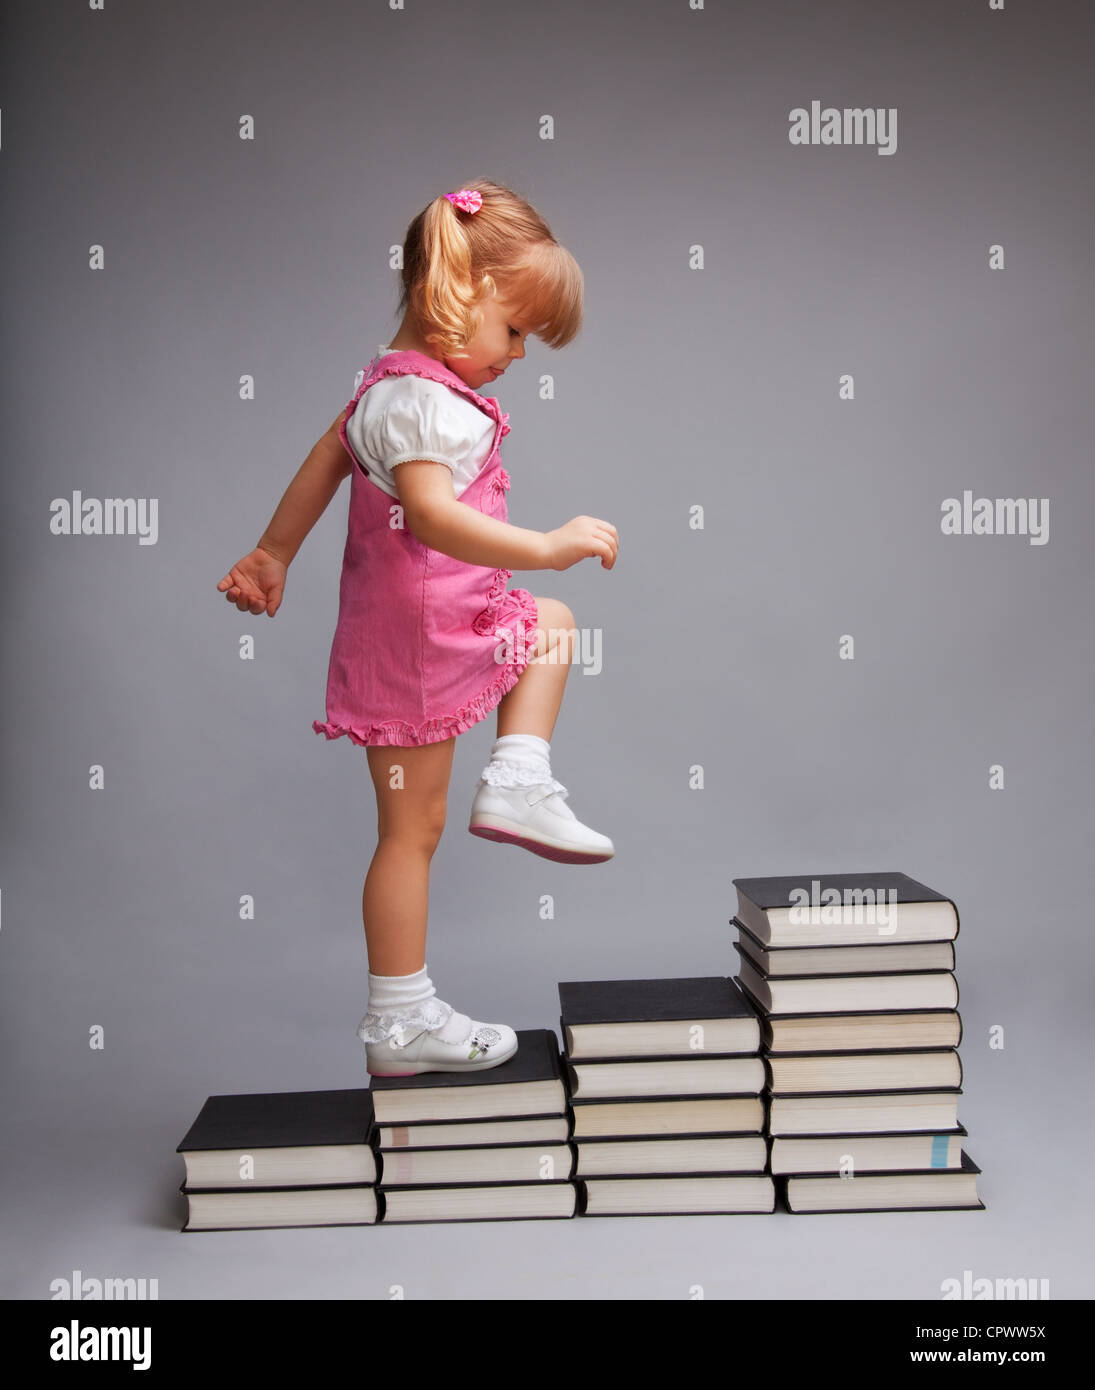 Con successo passando da un livello di istruzione di un altro - ragazza salendo le scale di libri Foto Stock